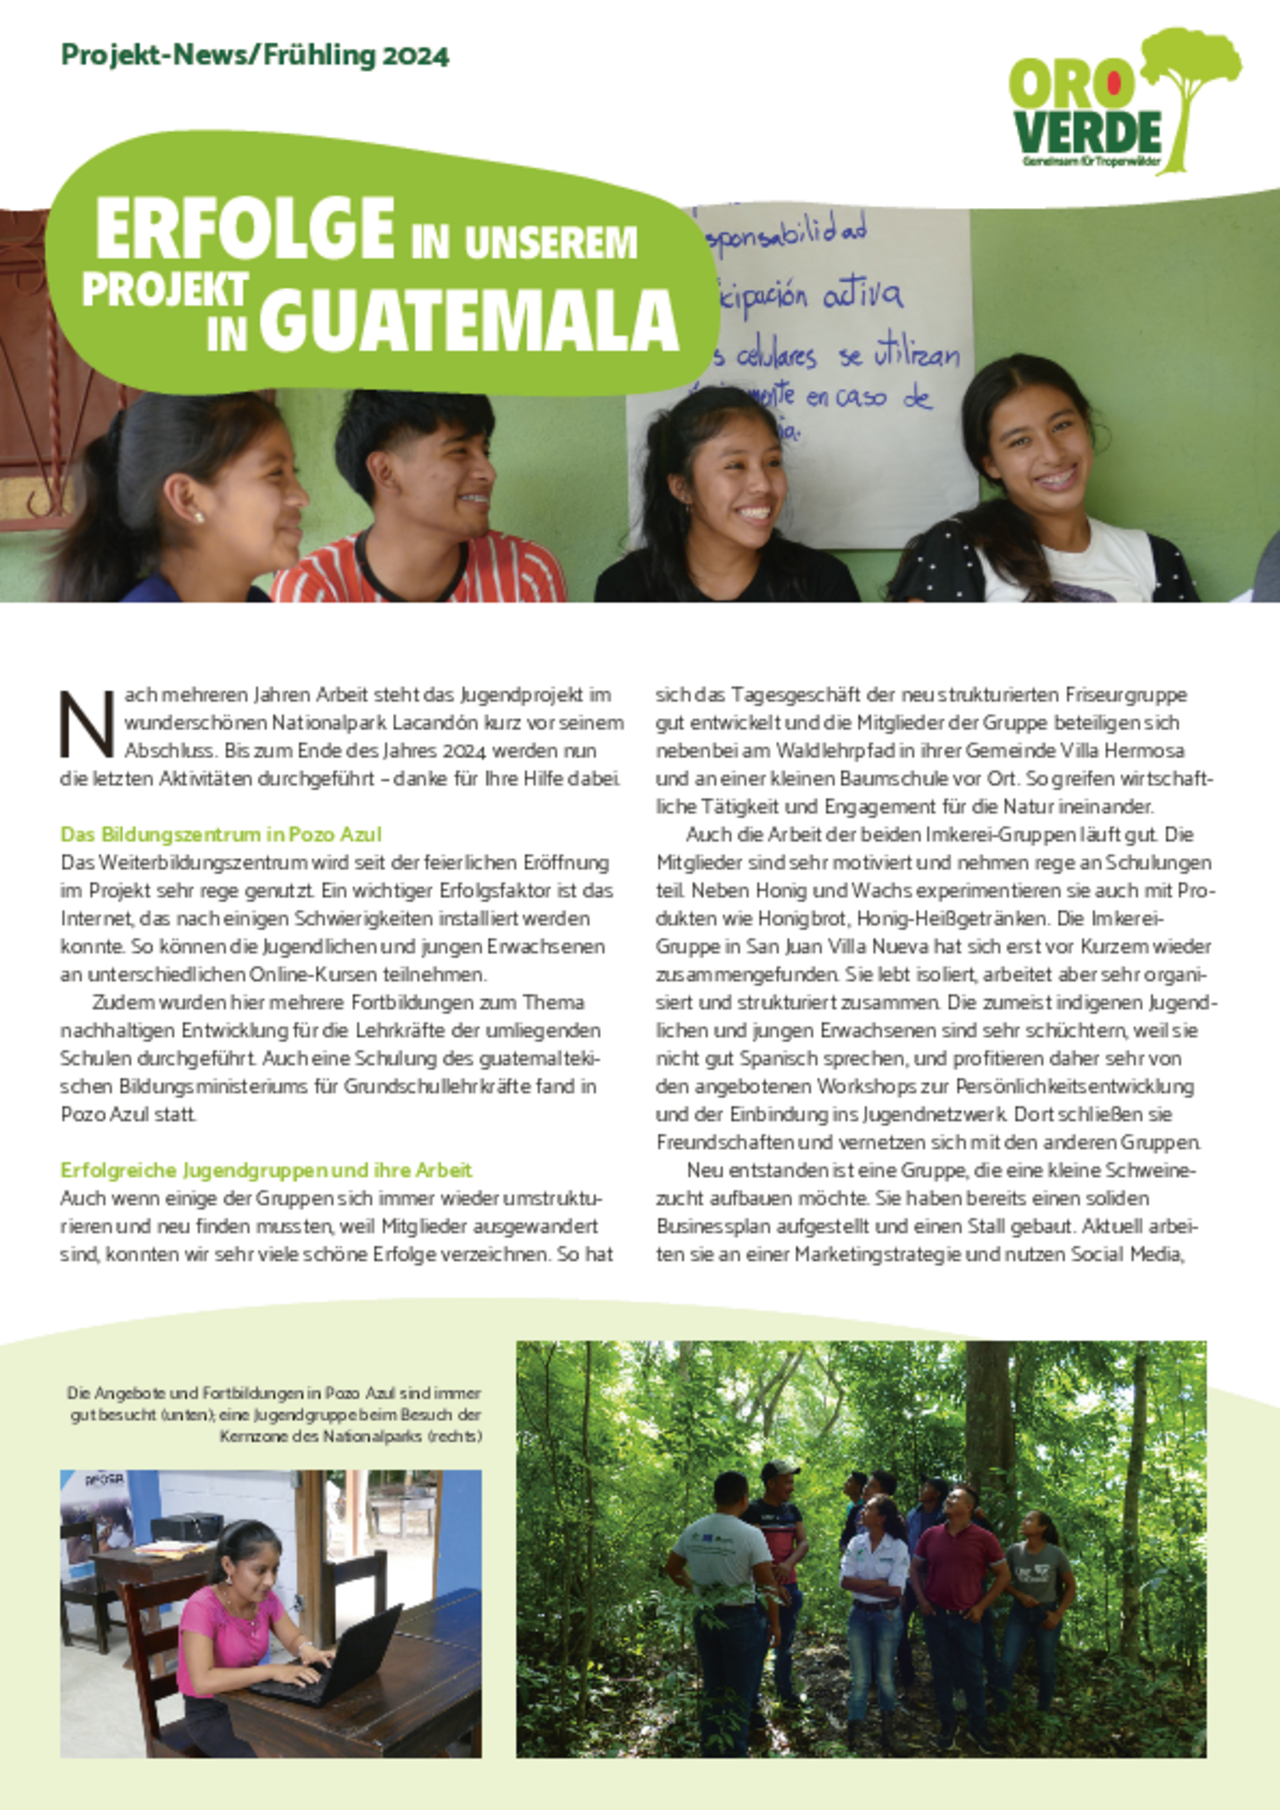 Projekt-Fortschritt 2024 im Jugendprojekt Guatemala